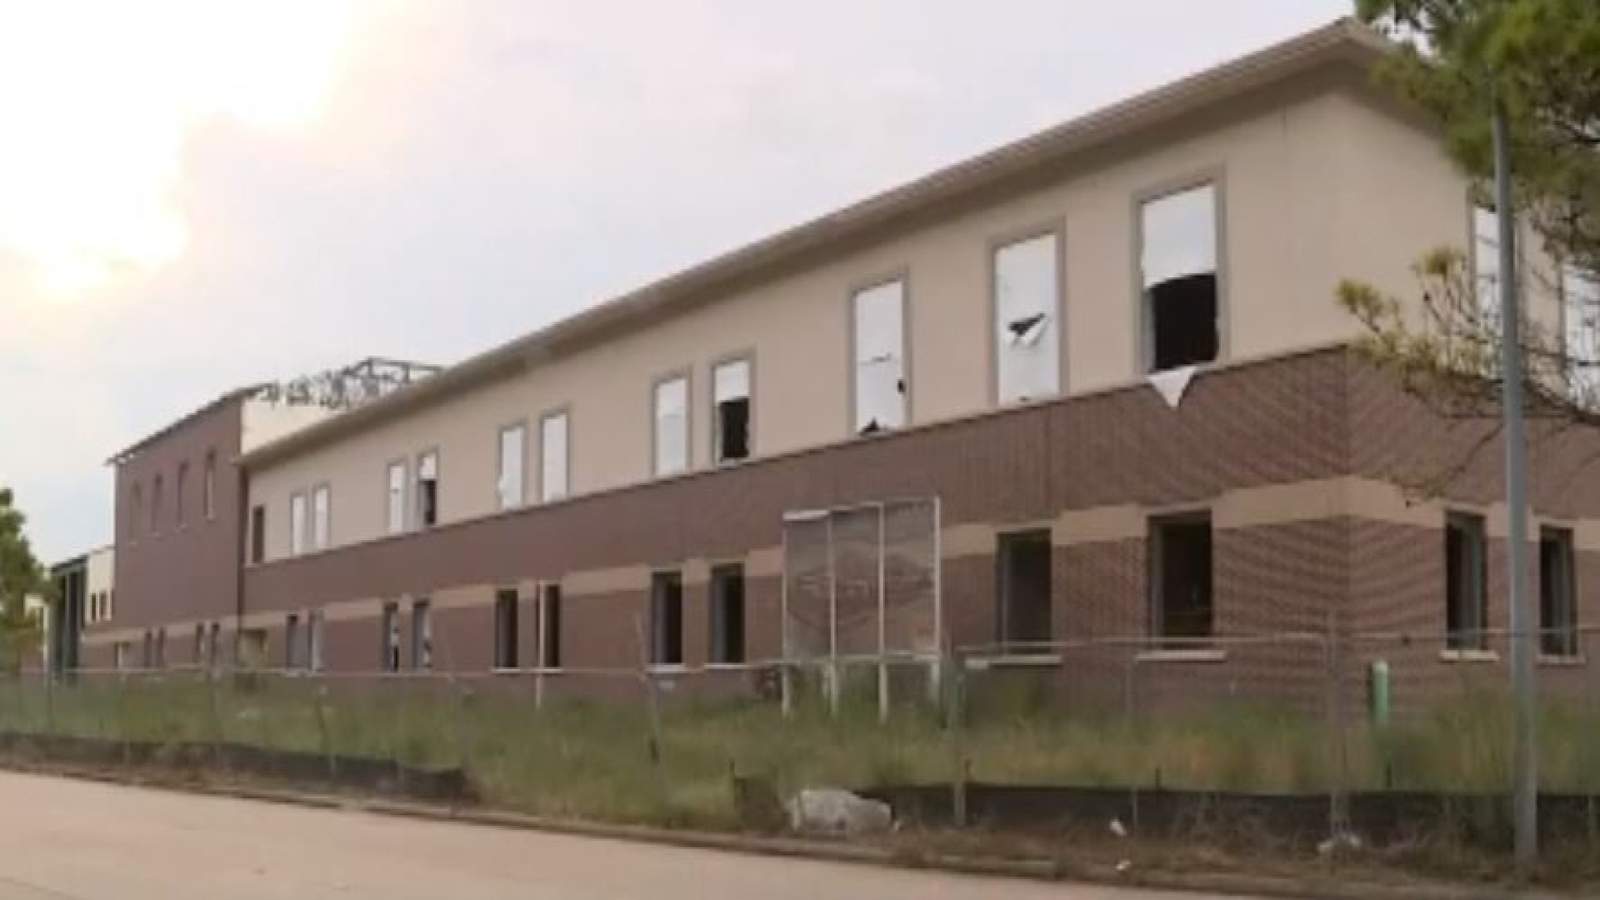 Unfinished charter school becomes neighborhood eyesore in southeast Harris County